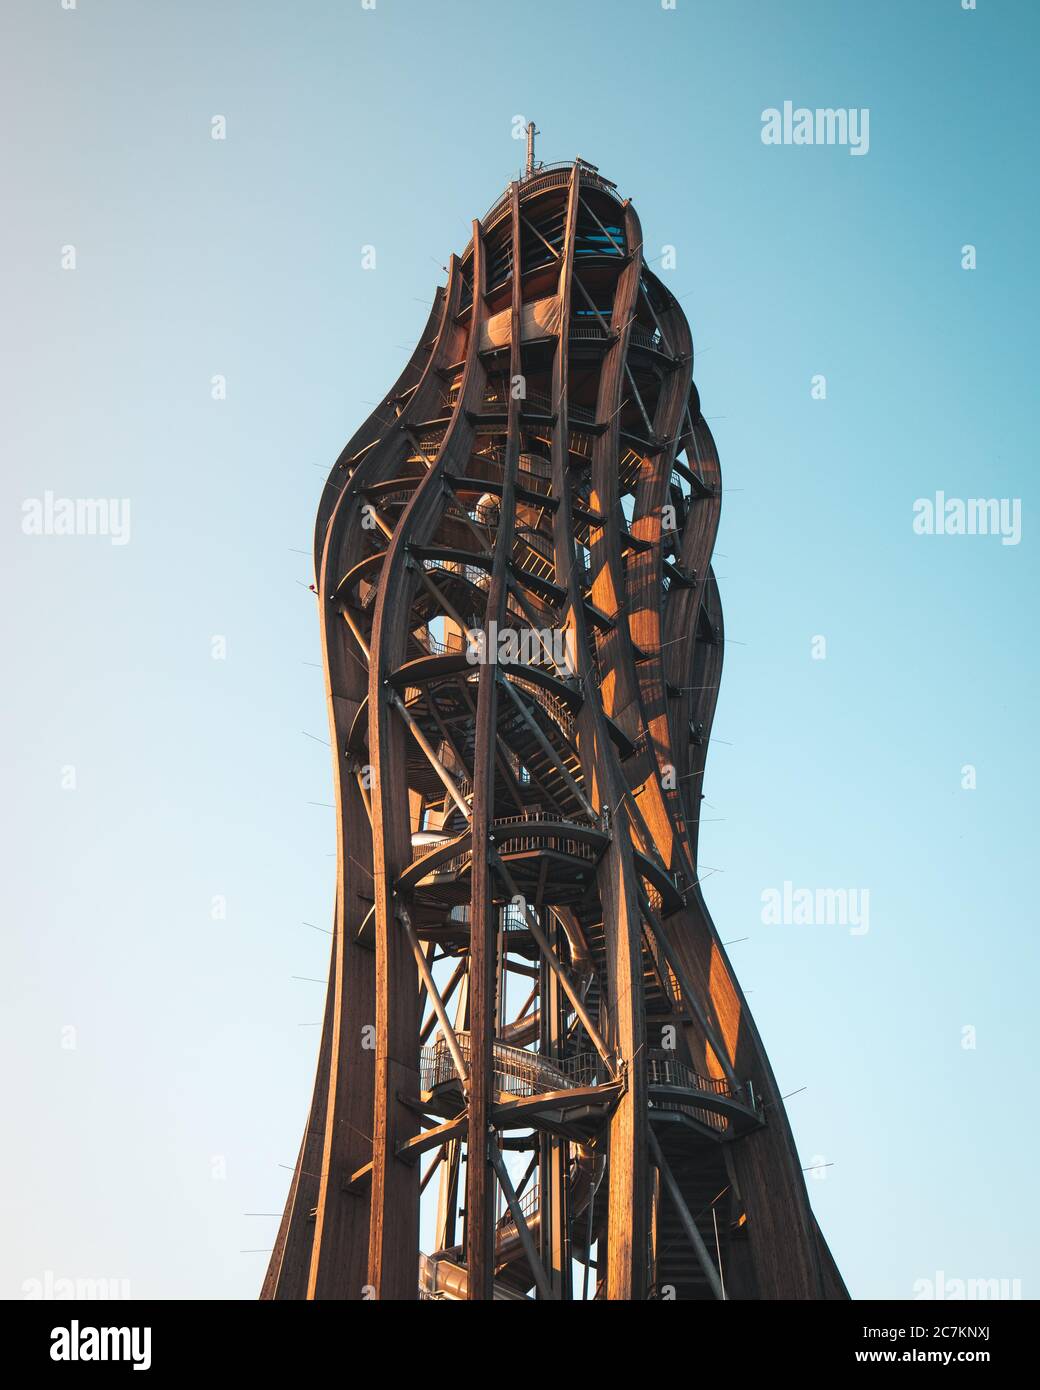 Der Pyramidenkogel ist der höchste hölzerne Aussichtsturm der Welt und  beherbergt auch die höchste Baurutsche Europas. Seine Höhe beträgt 27 Meter  Stockfotografie - Alamy